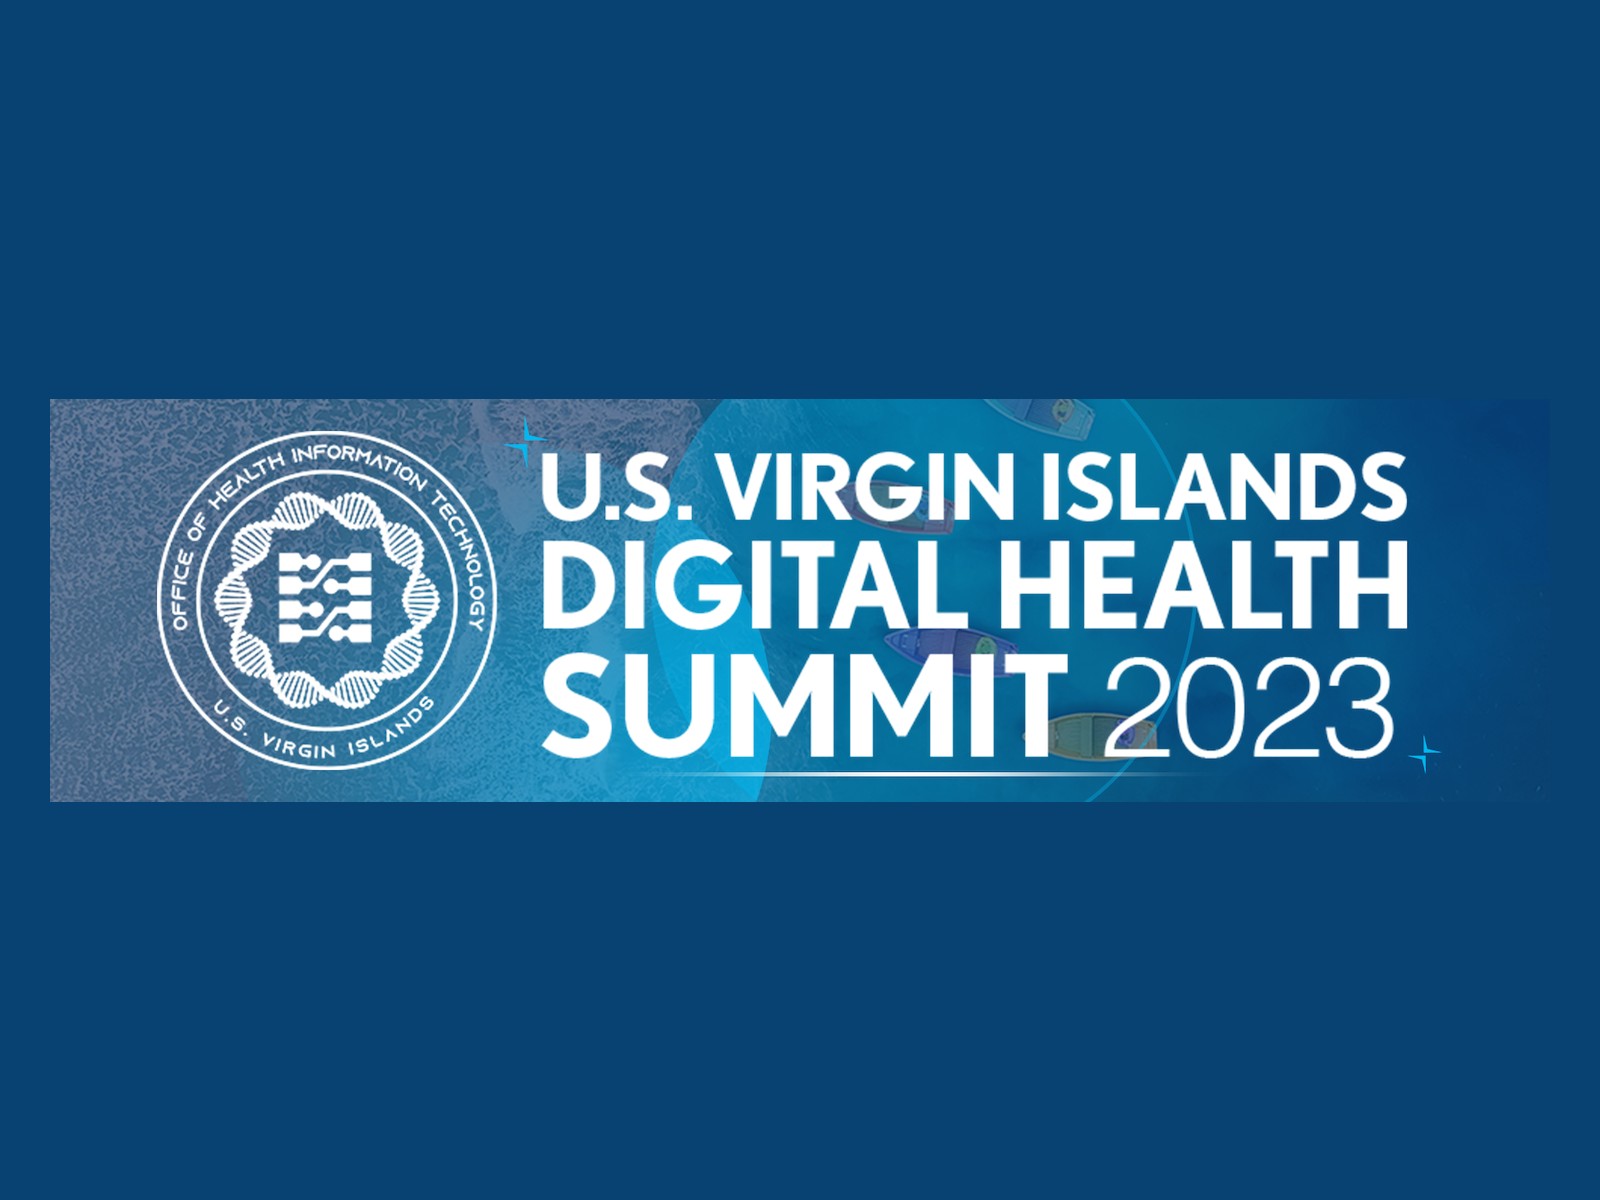 USVI Digital Health Summit 2023